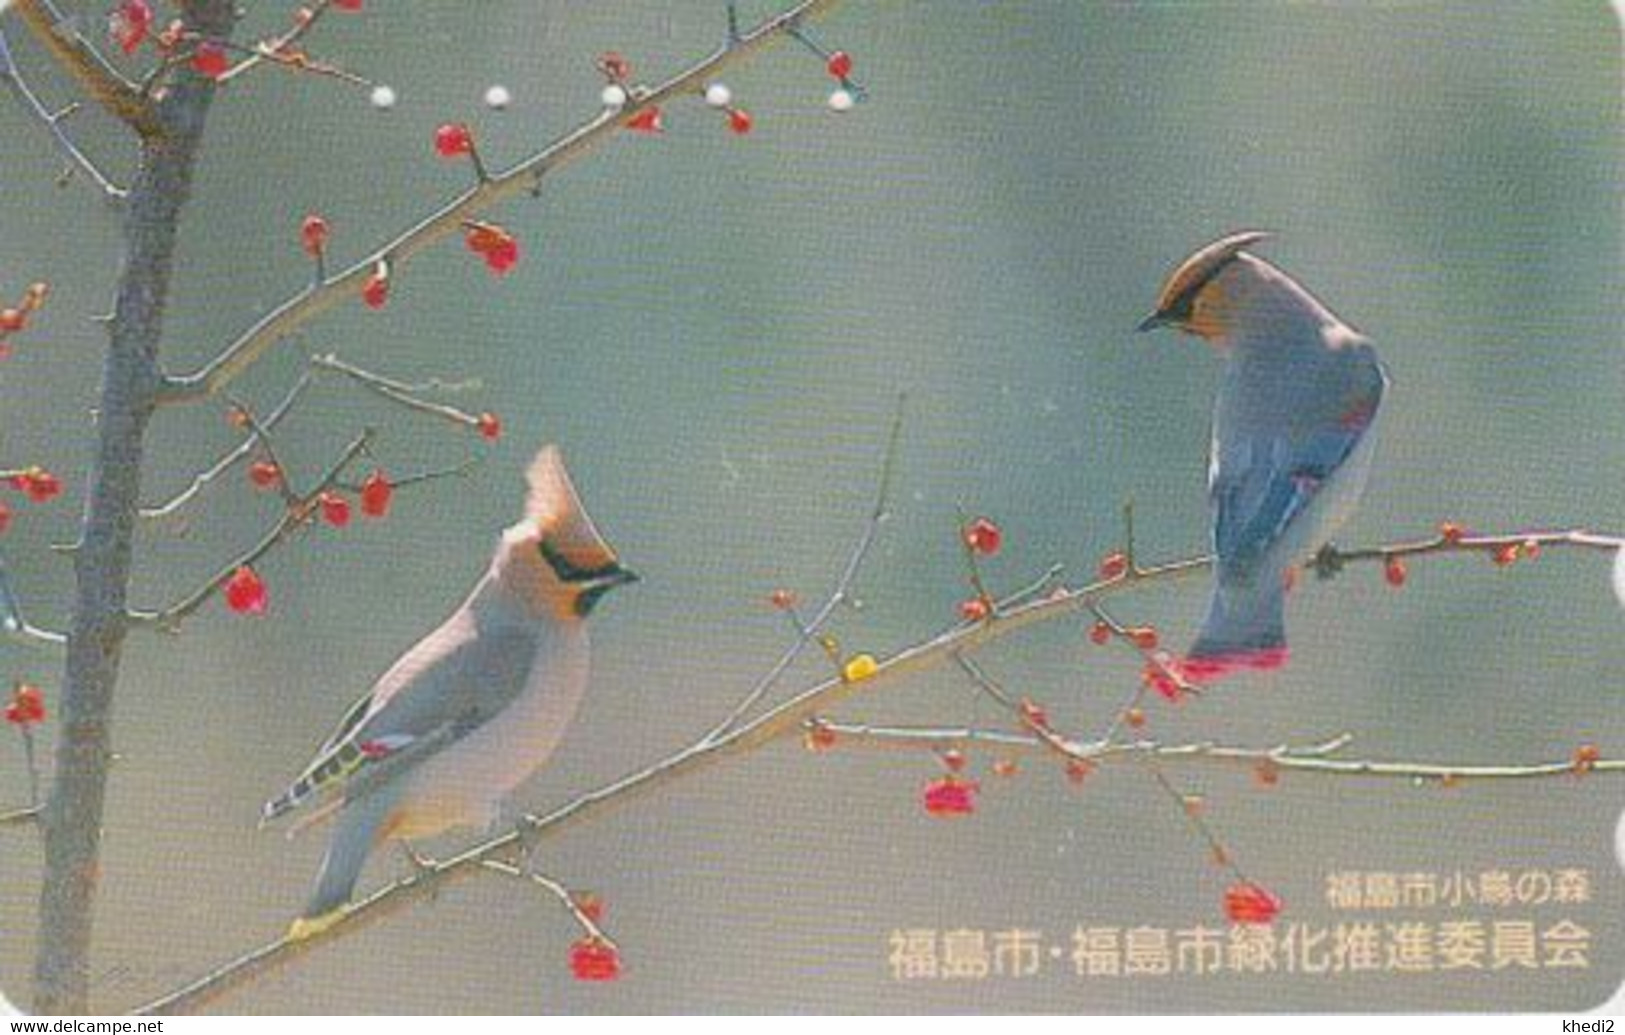 RARE TC JAPON / 410-11339 - ANIMAL - OISEAU - JASEUR BOREAL - BIRD JAPAN Free Phonecard - 5673 - Songbirds & Tree Dwellers